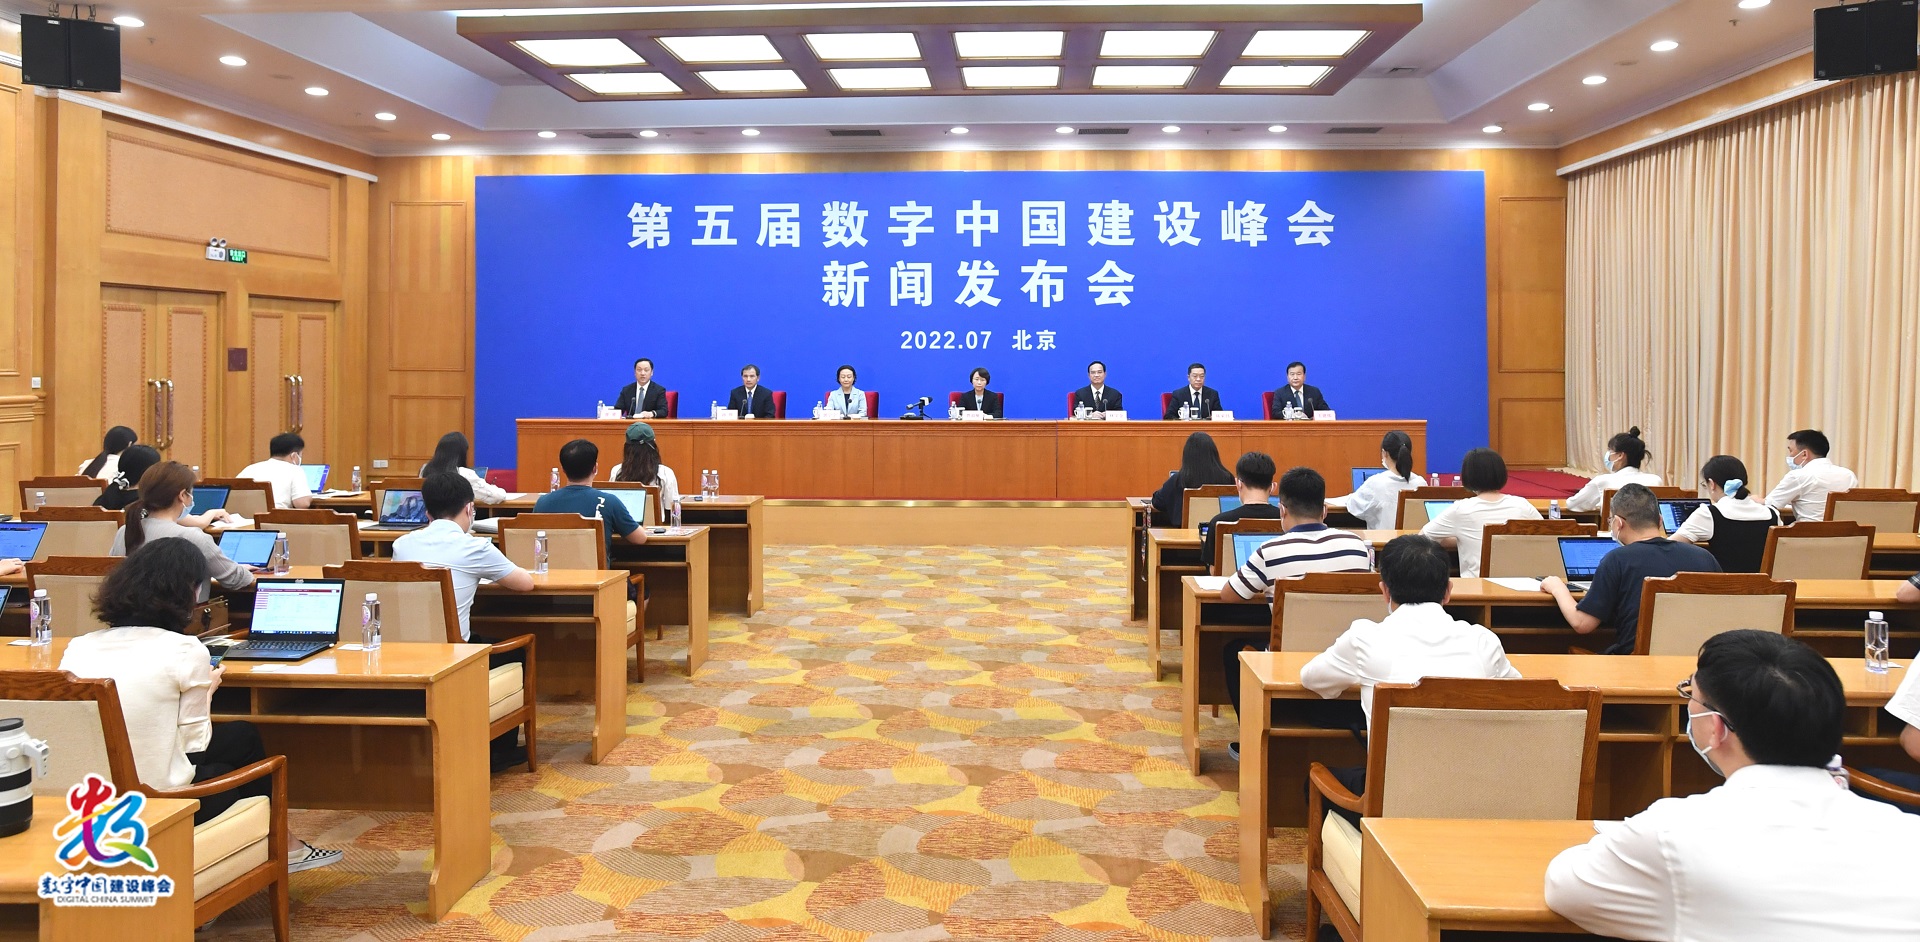 第五届数字中国建设峰会7月23日至24日在福州举办